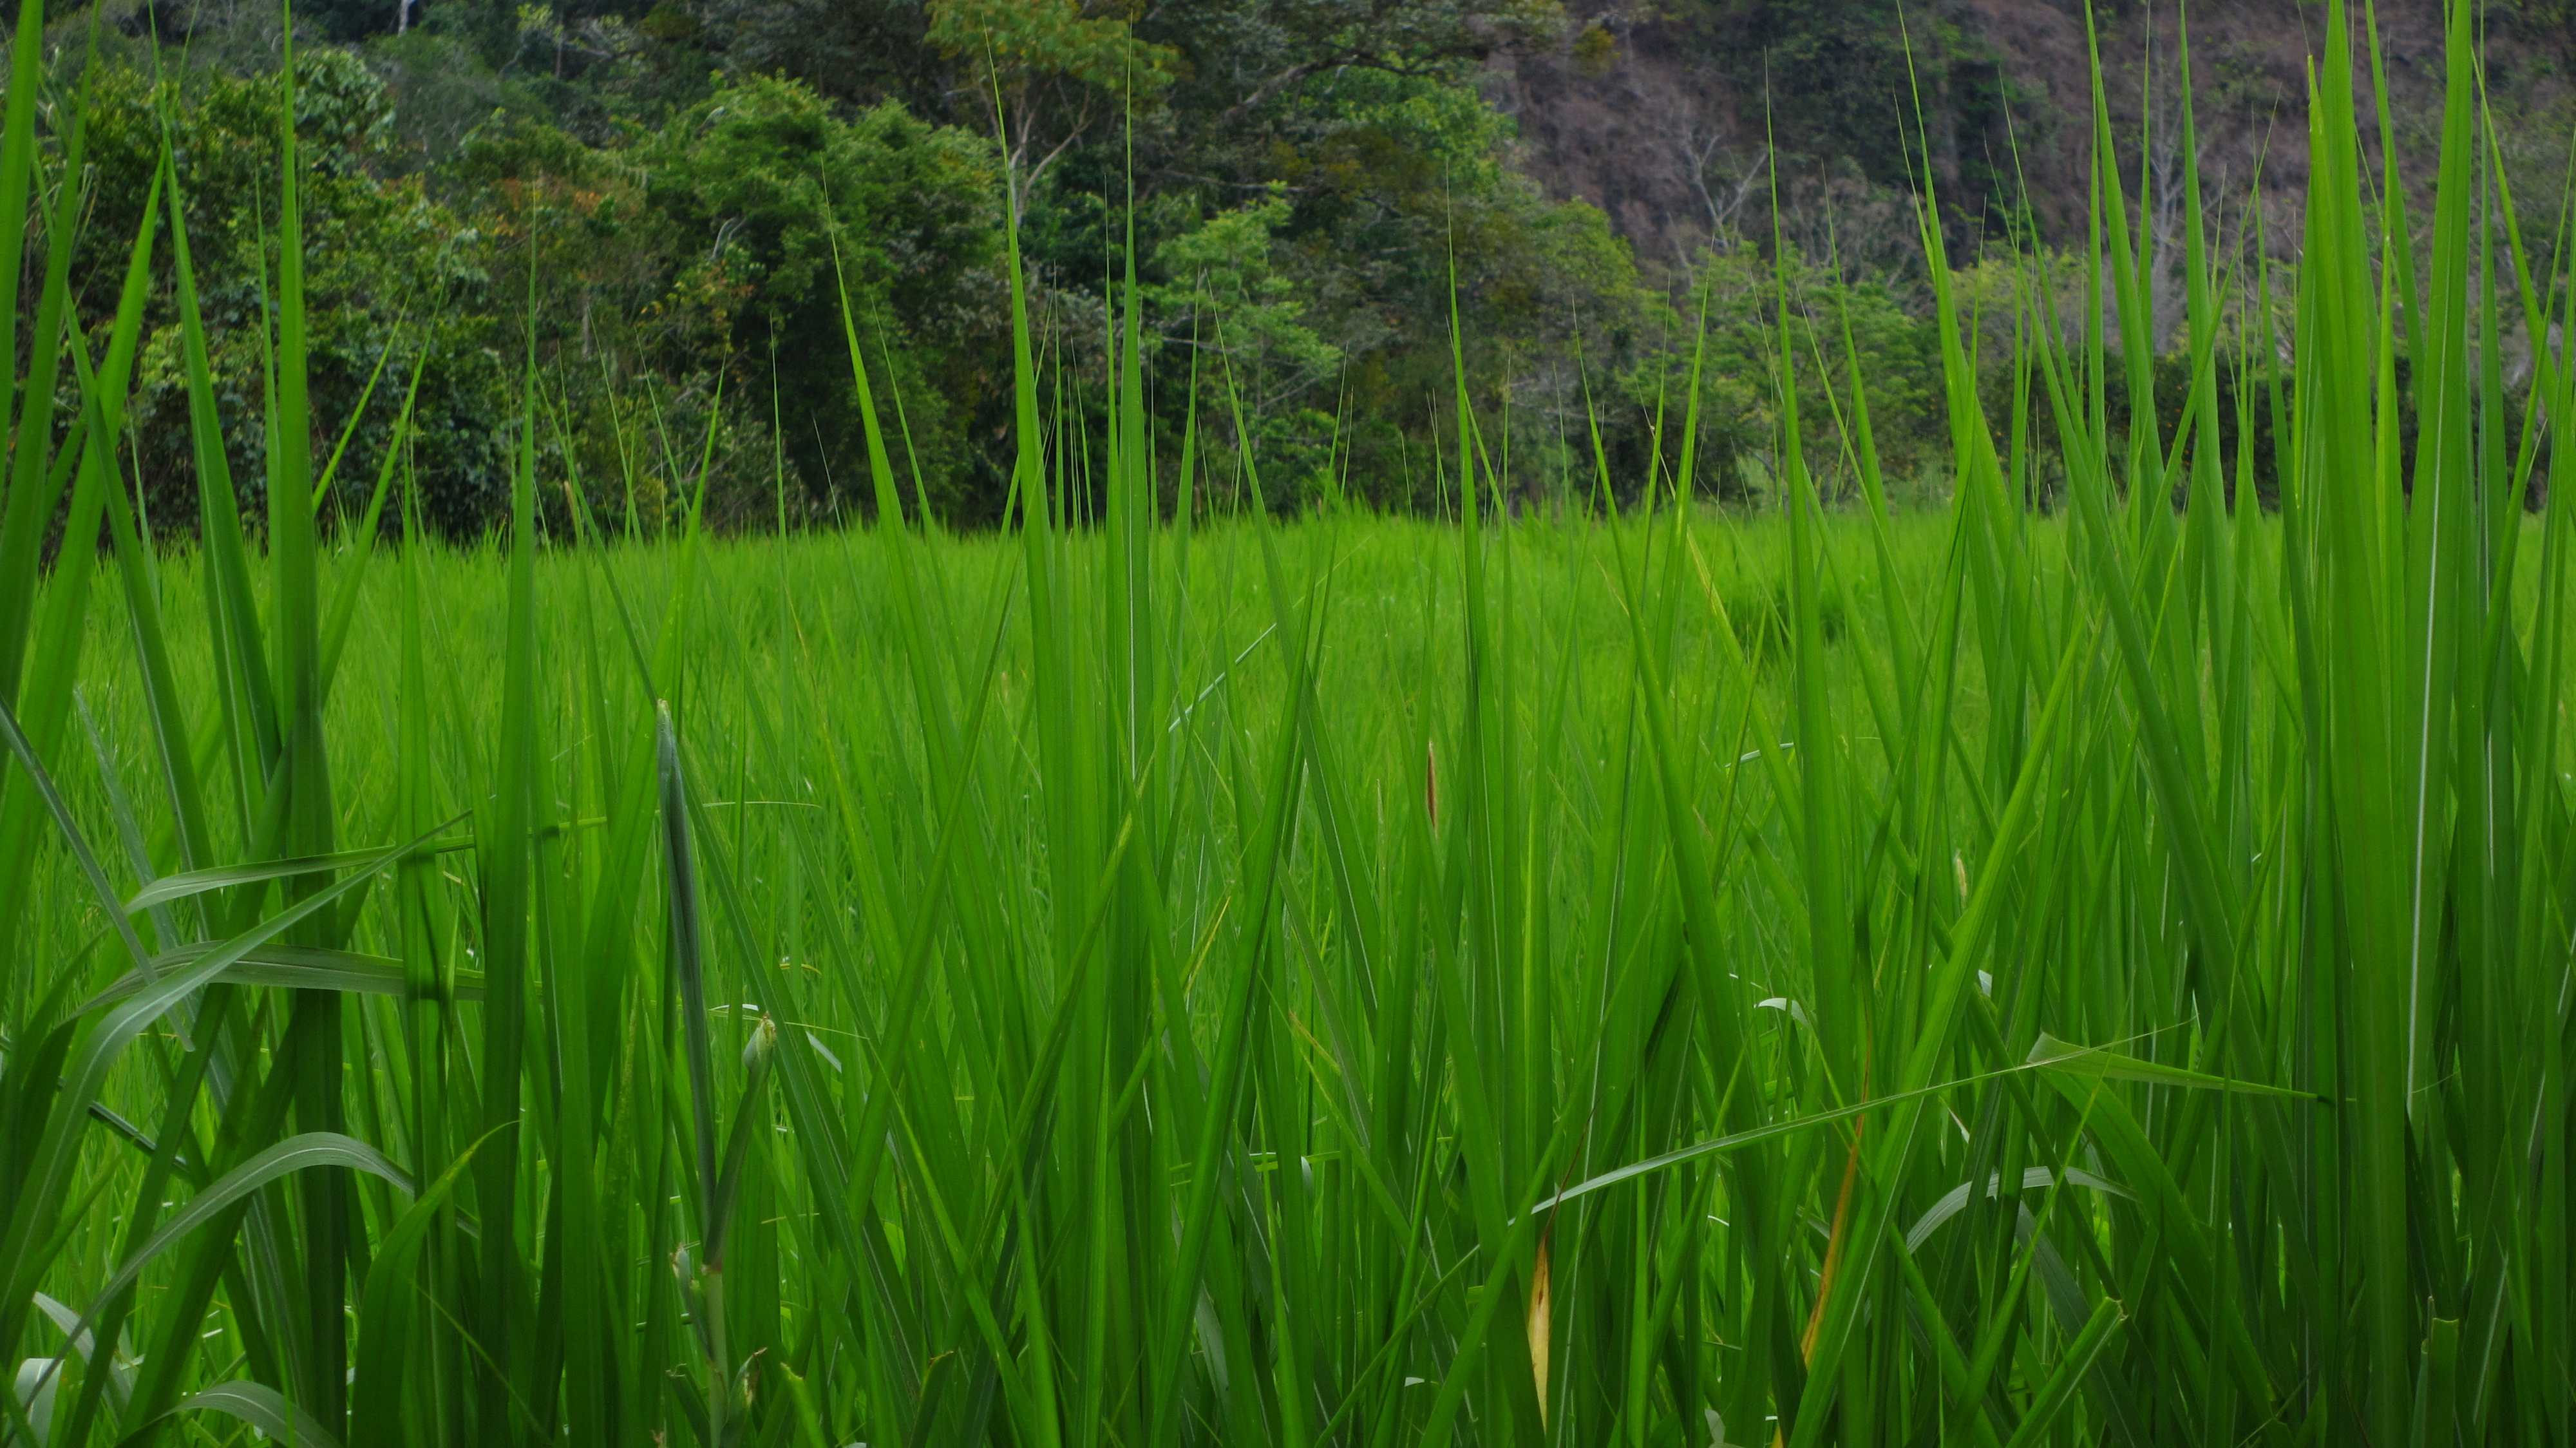 an image of tall grass